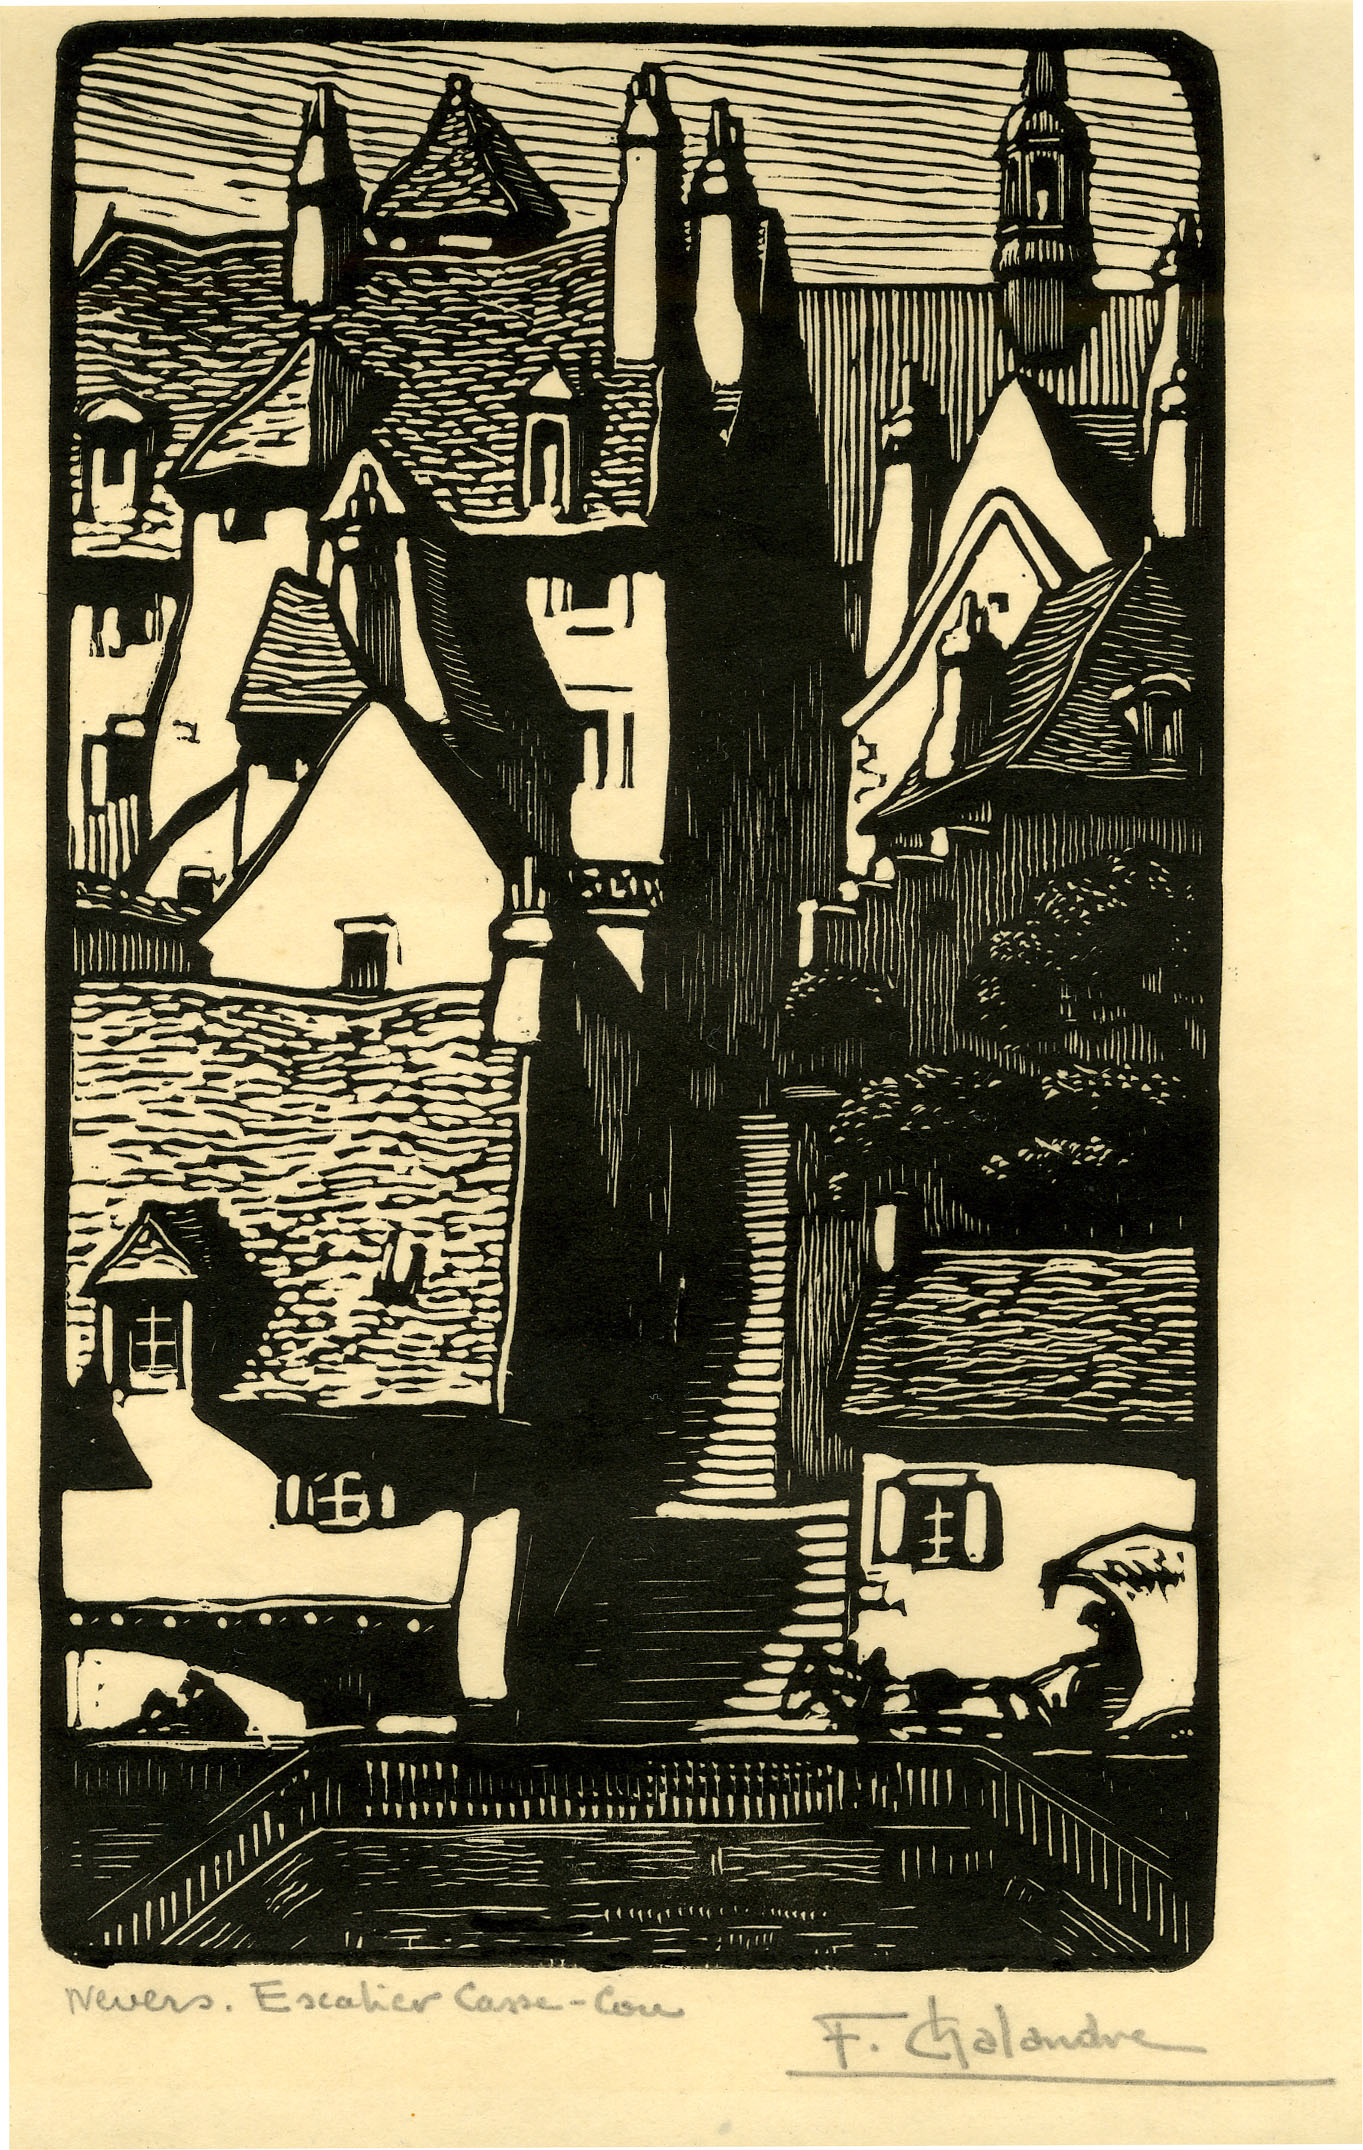 Nevers. Escalier Casse-Cou (1925)